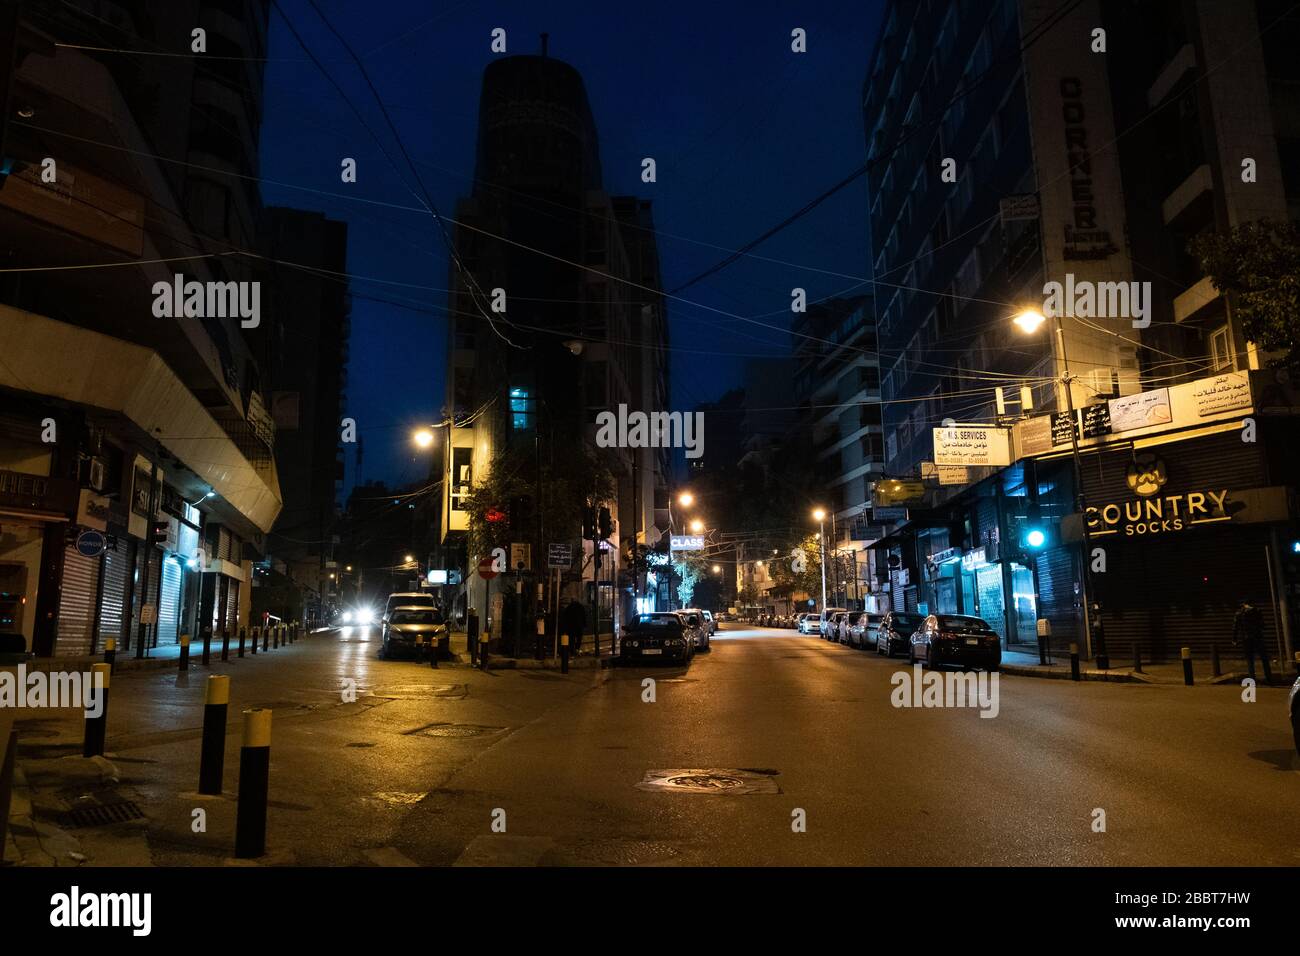 Beirut, Libano.1 aprile 2020. La prima ora del coprifuoco notturno in mezzo alla pandemia di Covid 19. Hassan Chamun/Alamy Foto Stock